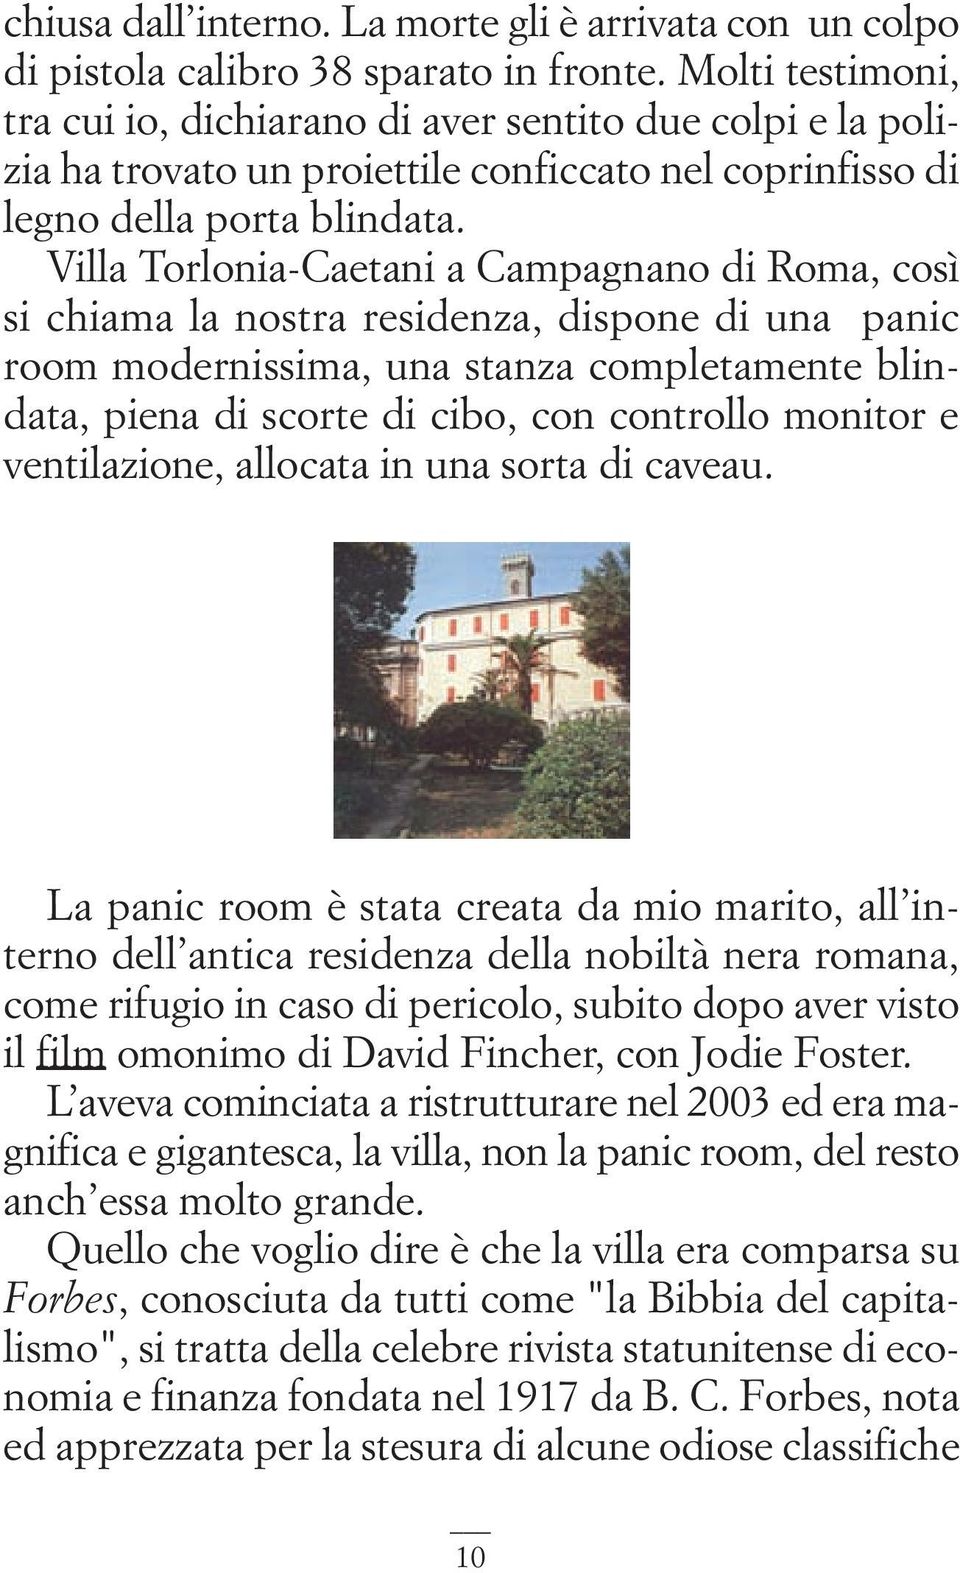 Villa Torlonia-Caetani a Campagnano di Roma, così si chiama la nostra residenza, dispone di una panic room modernissima, una stanza completamente blindata, piena di scorte di cibo, con controllo